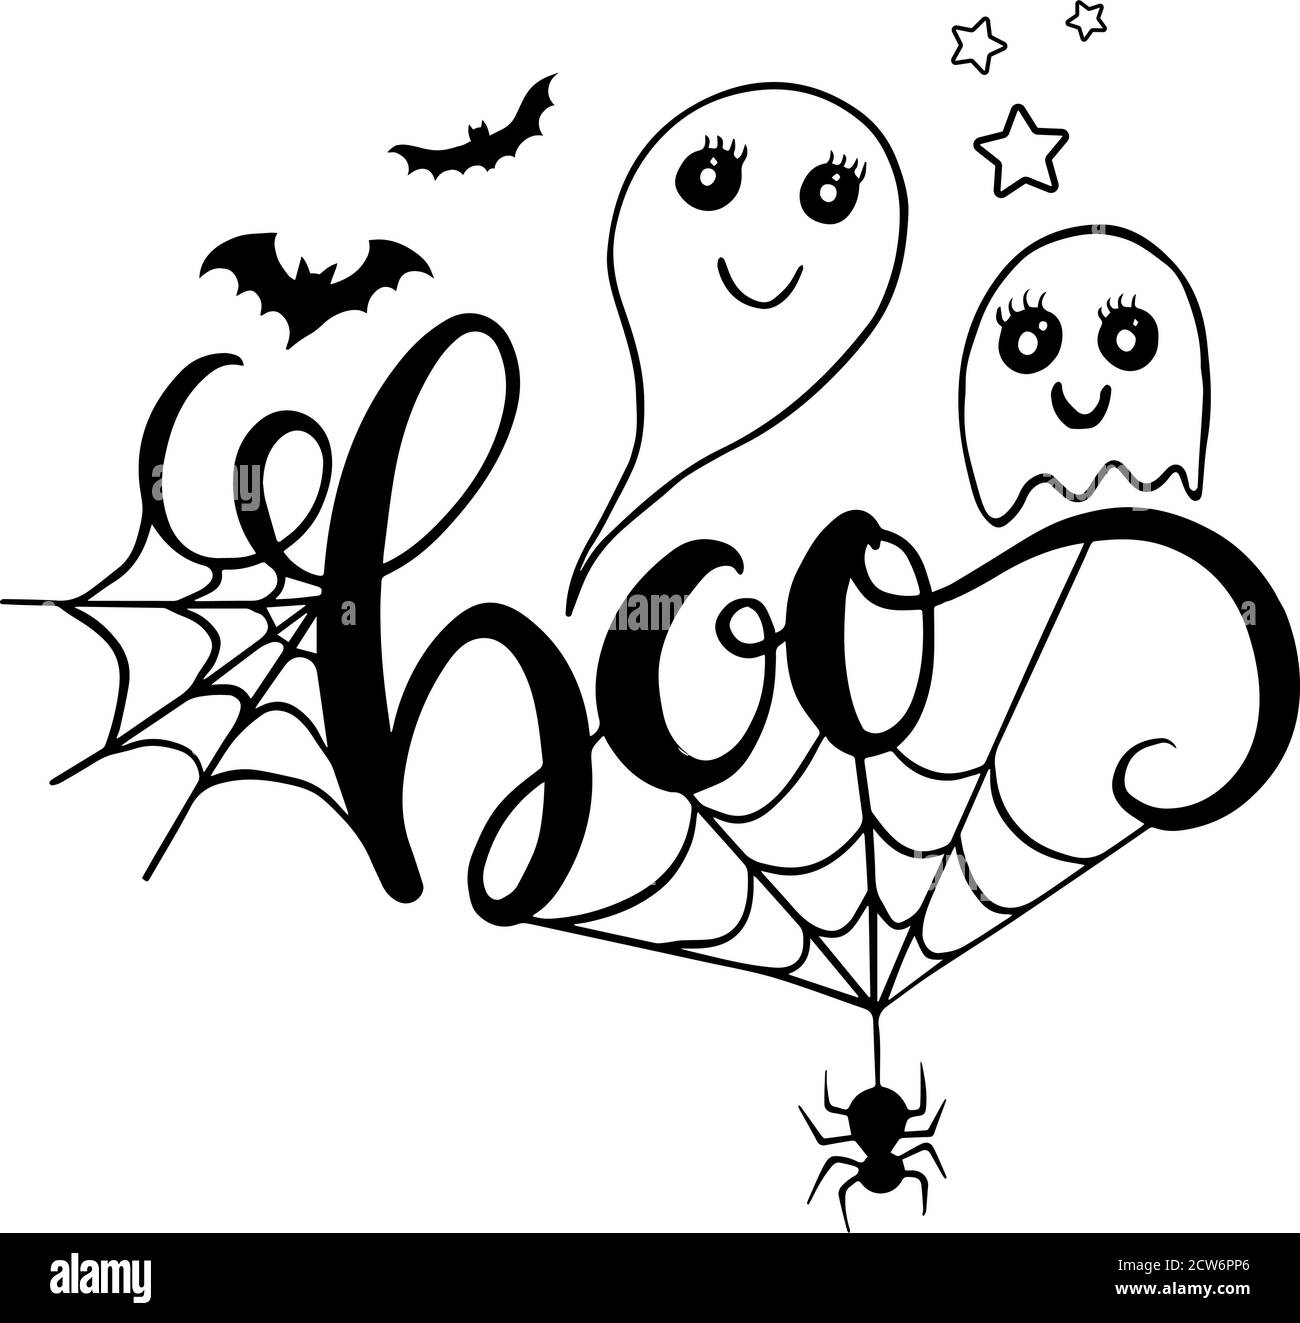 Scritta Boo con pipistrelli fantasma e ragno. Illustrazione vettoriale per Halloween. Illustrazione Vettoriale